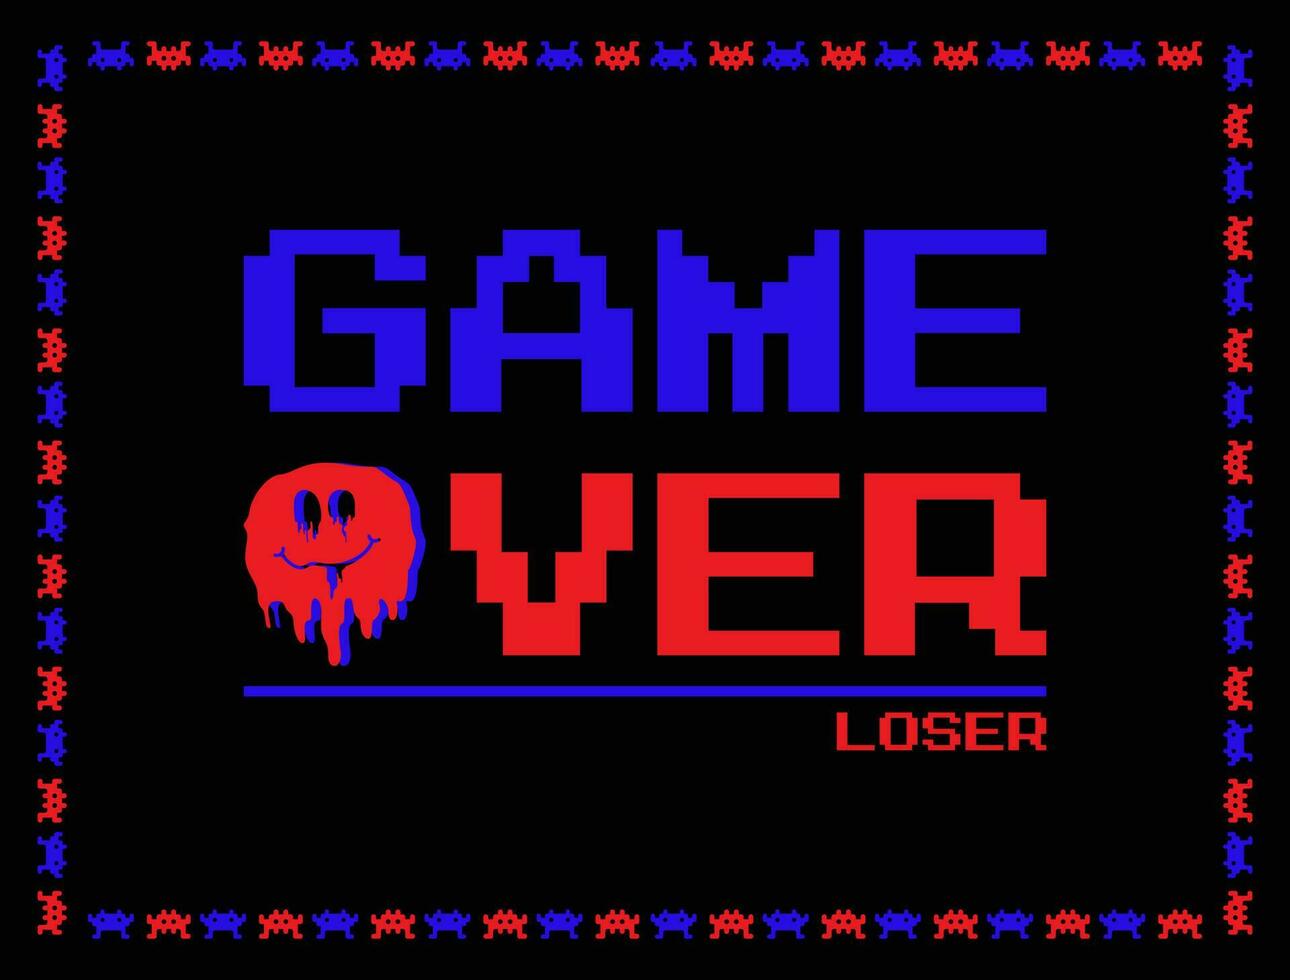 Spiel Über Text Spiele Verlierer Spieler Fertig Hintergrund Vorlage Pixel Mosaik Stil Vektor Illustration editierbar